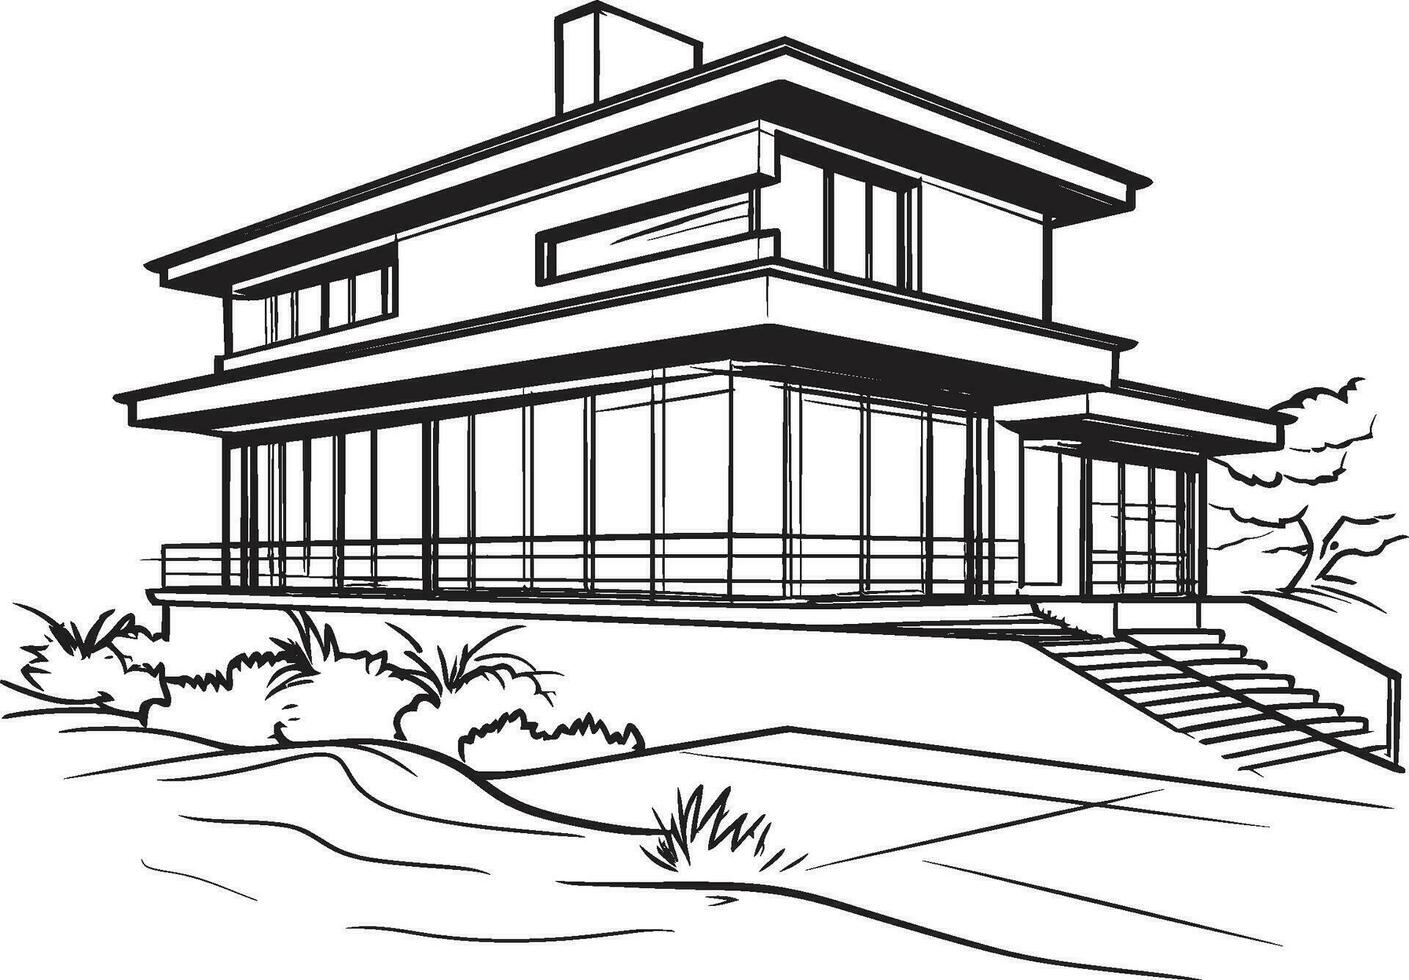 fast bostad symbol tjock hus skiss emblem kraftfull hemman mark djärv hus design i vektor